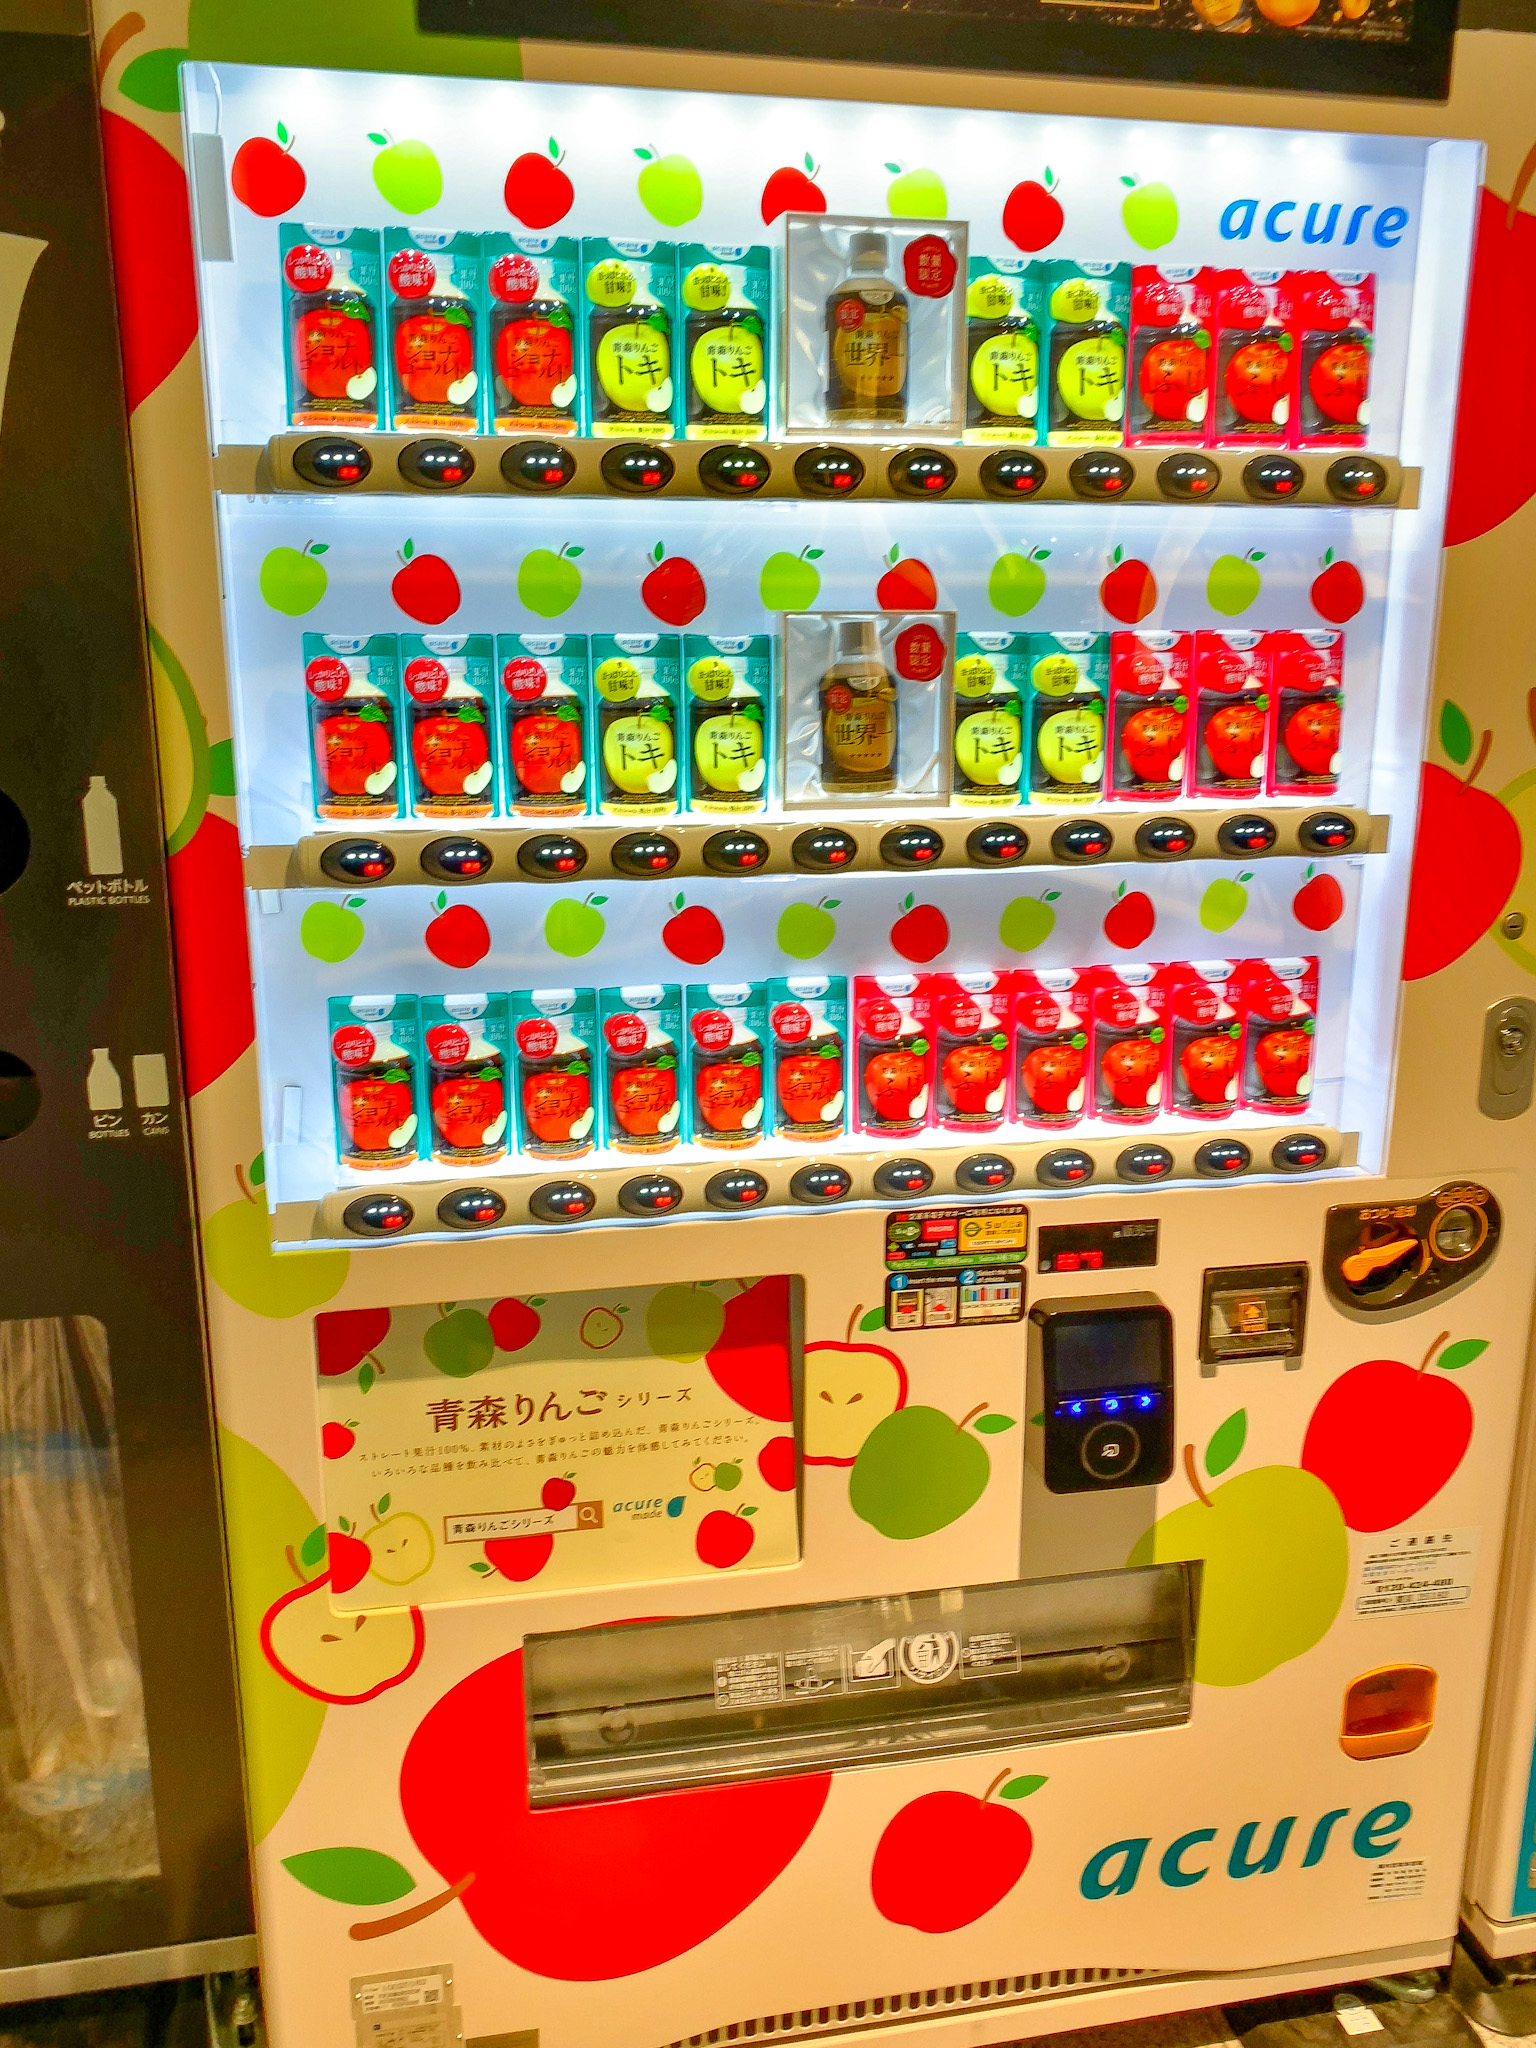 話題の東京駅 りんご自販機に行ってみた 1本300円の高級ジュースも 東京砂漠で生きてます